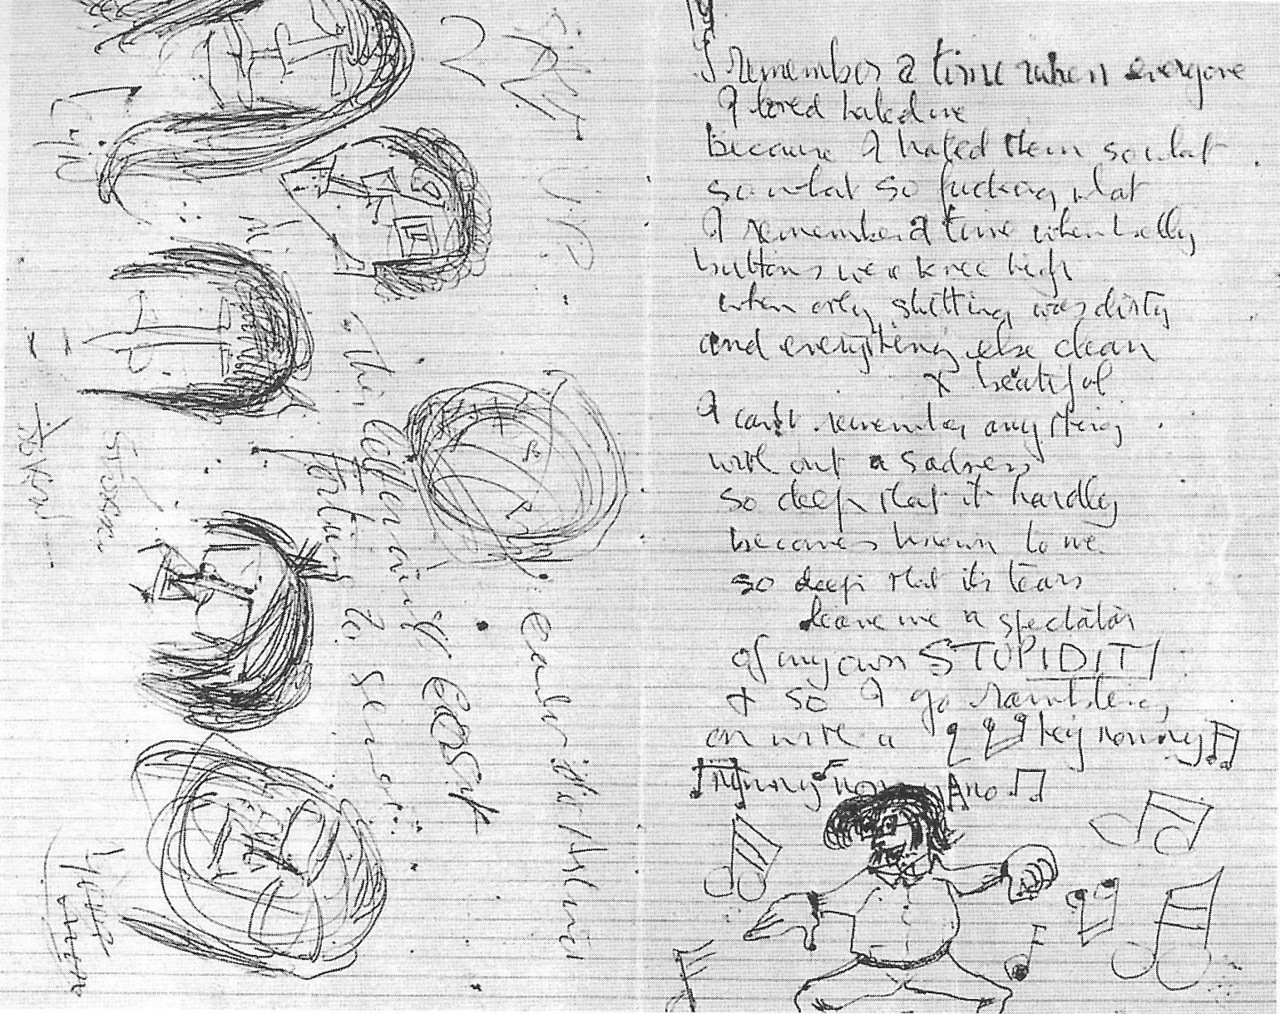 A letter to Stu Sutcliffe written by John Lennon